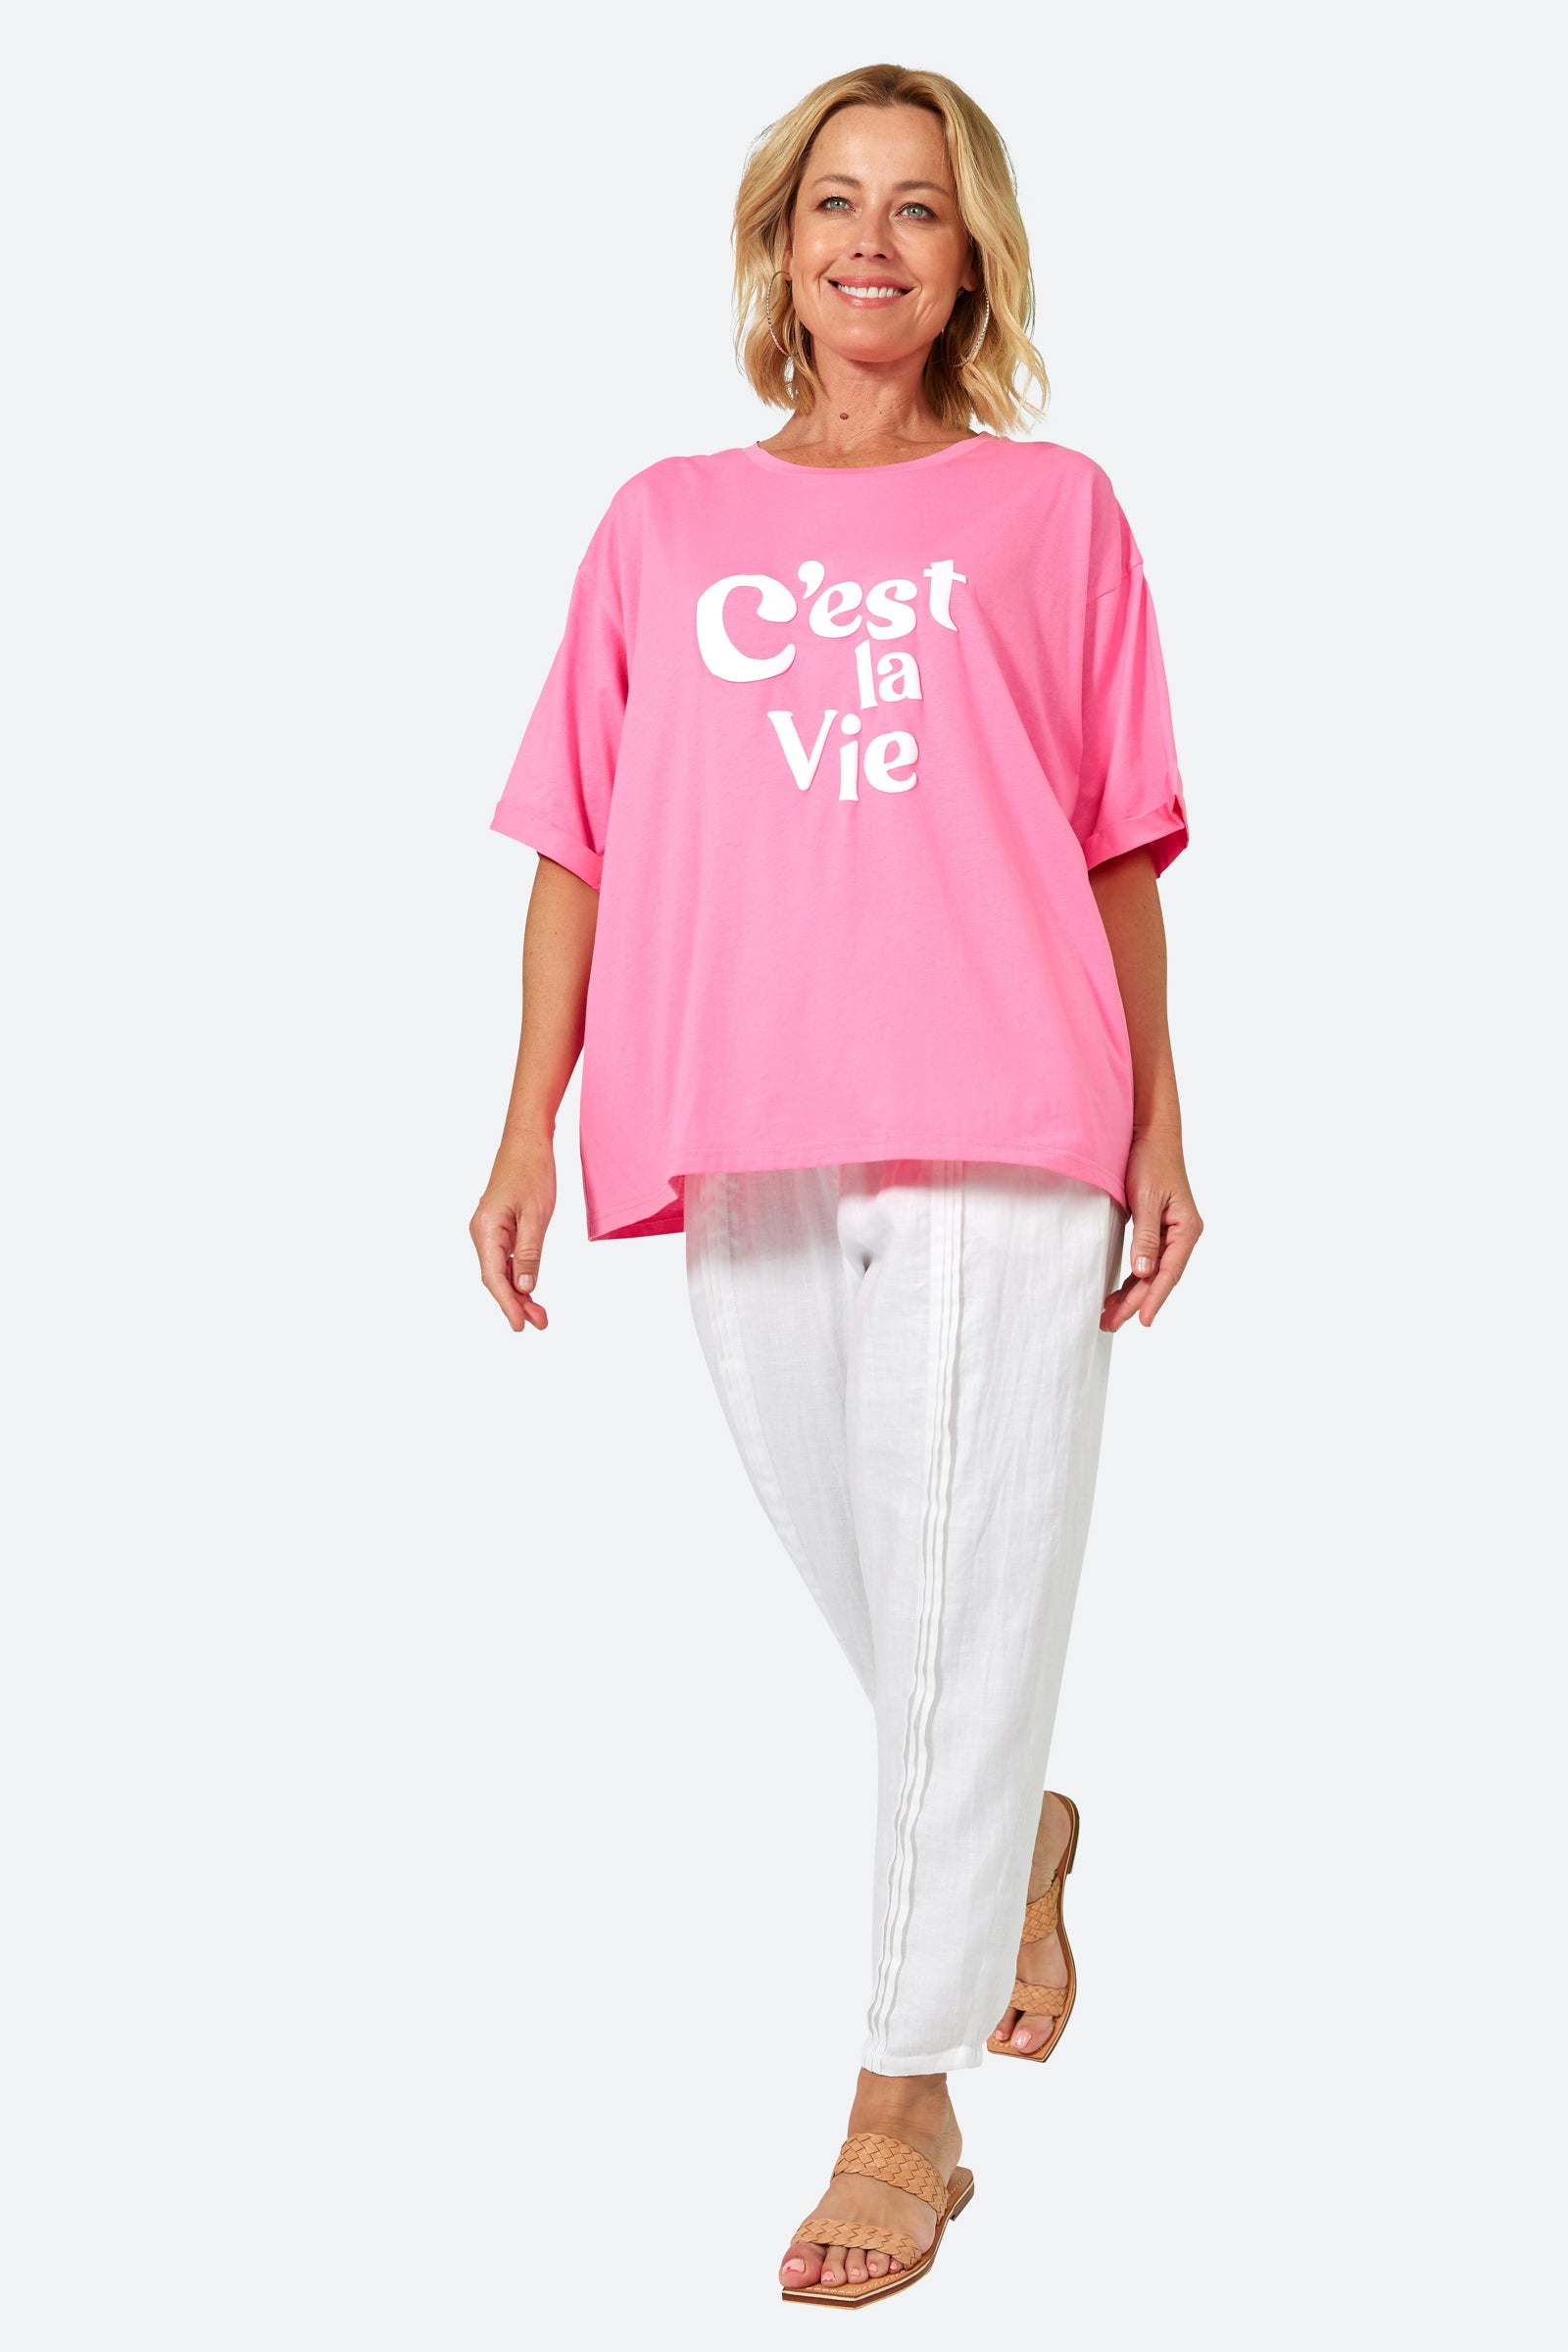 C'est La Vie Tshirt - Candy - eb&ive Clothing - Top Tshirt S/S One Size